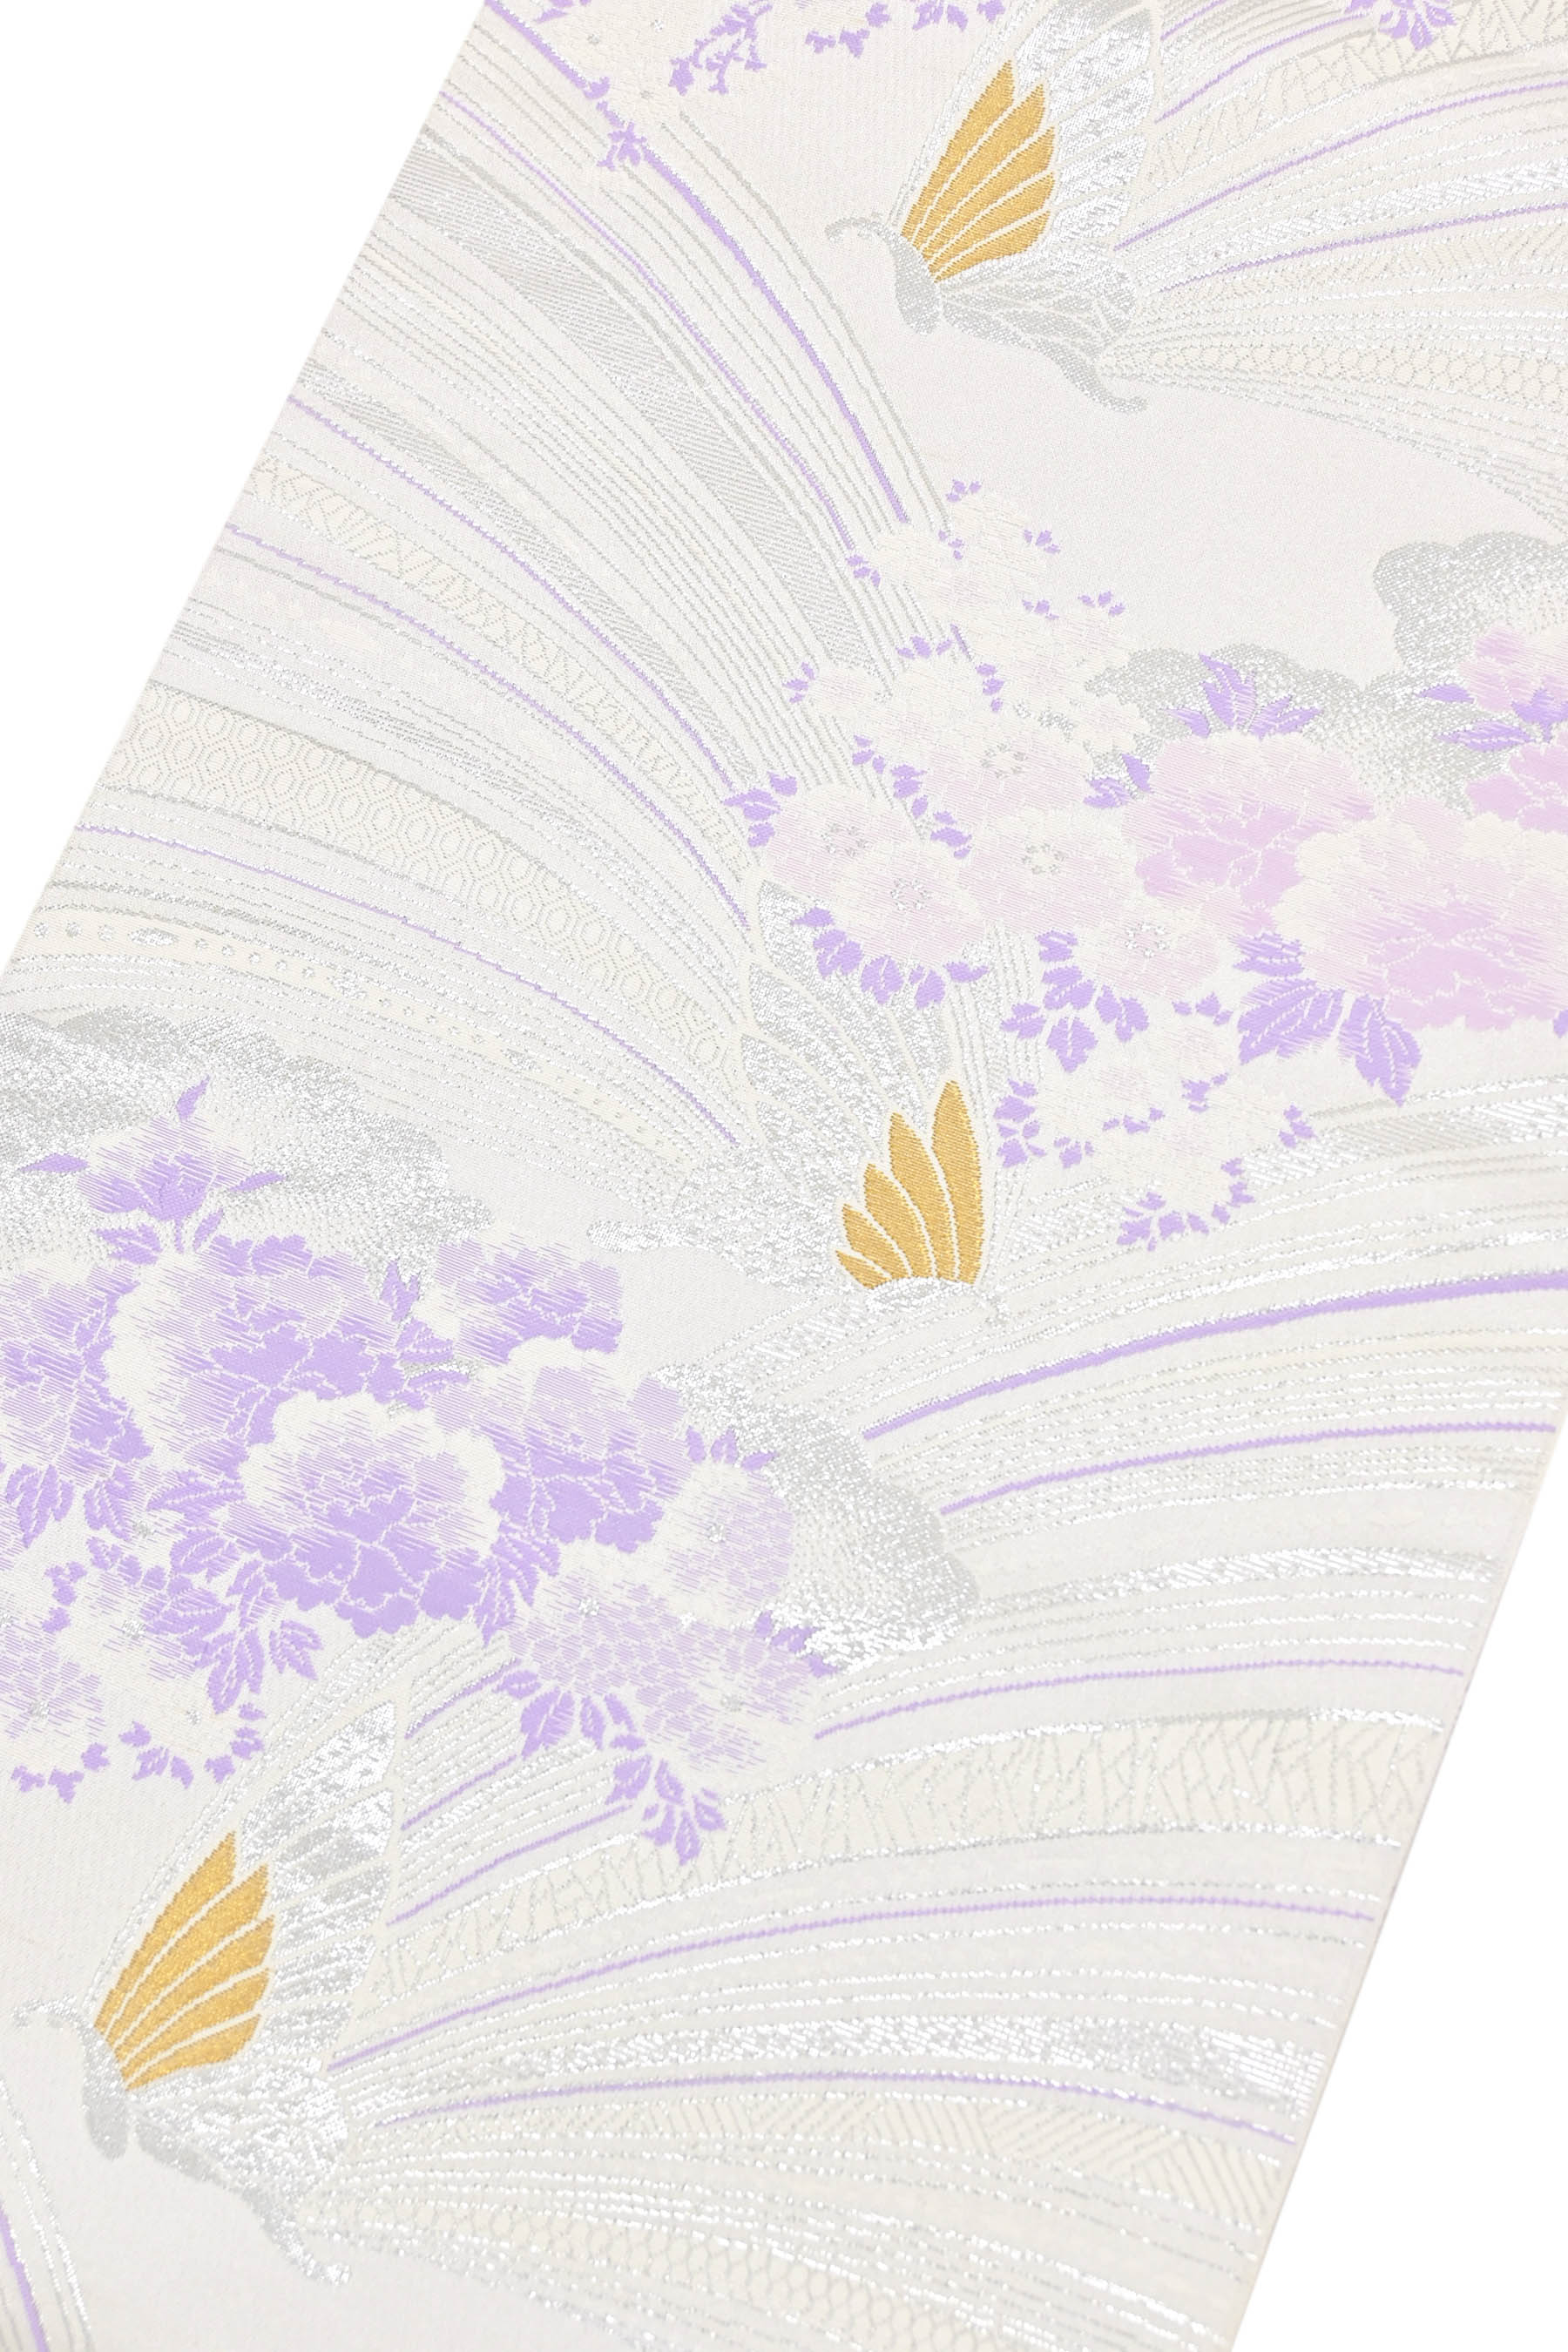 商品詳細 - 創作正絹袋帯 花蝶の調べ」 ☆雅な美匠. 京都きもの市場